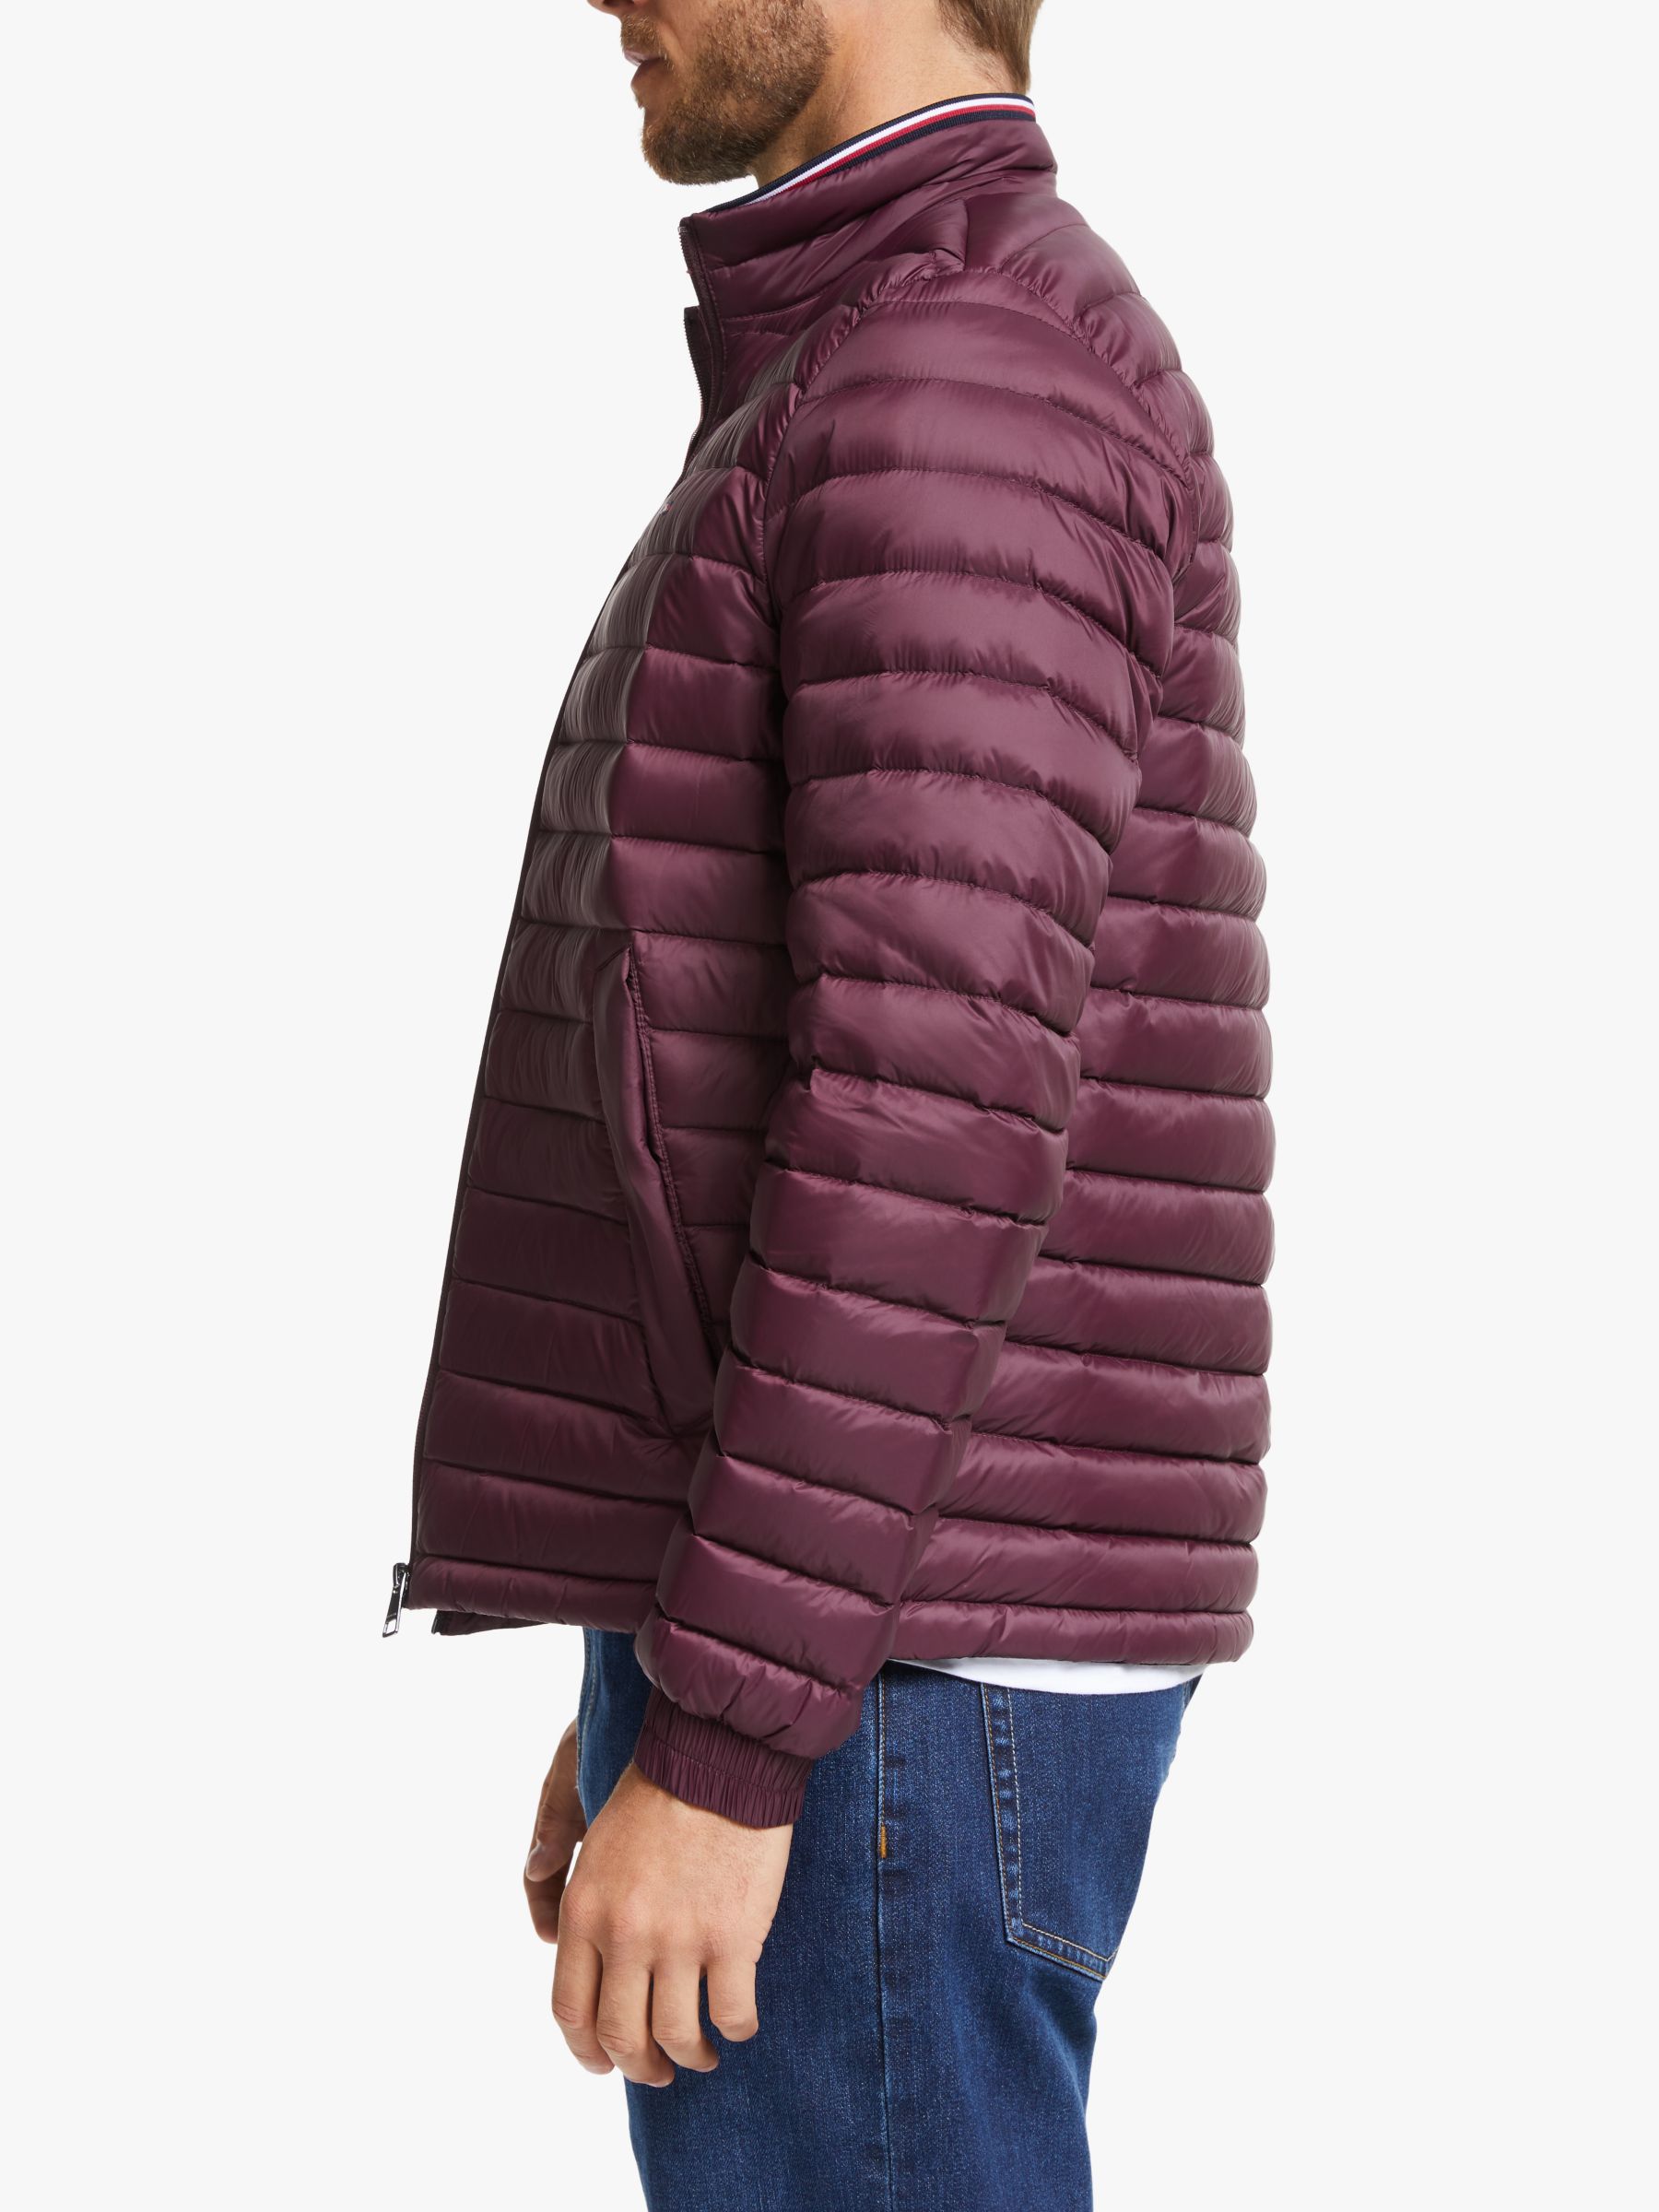 tommy hilfiger burgundy jacket